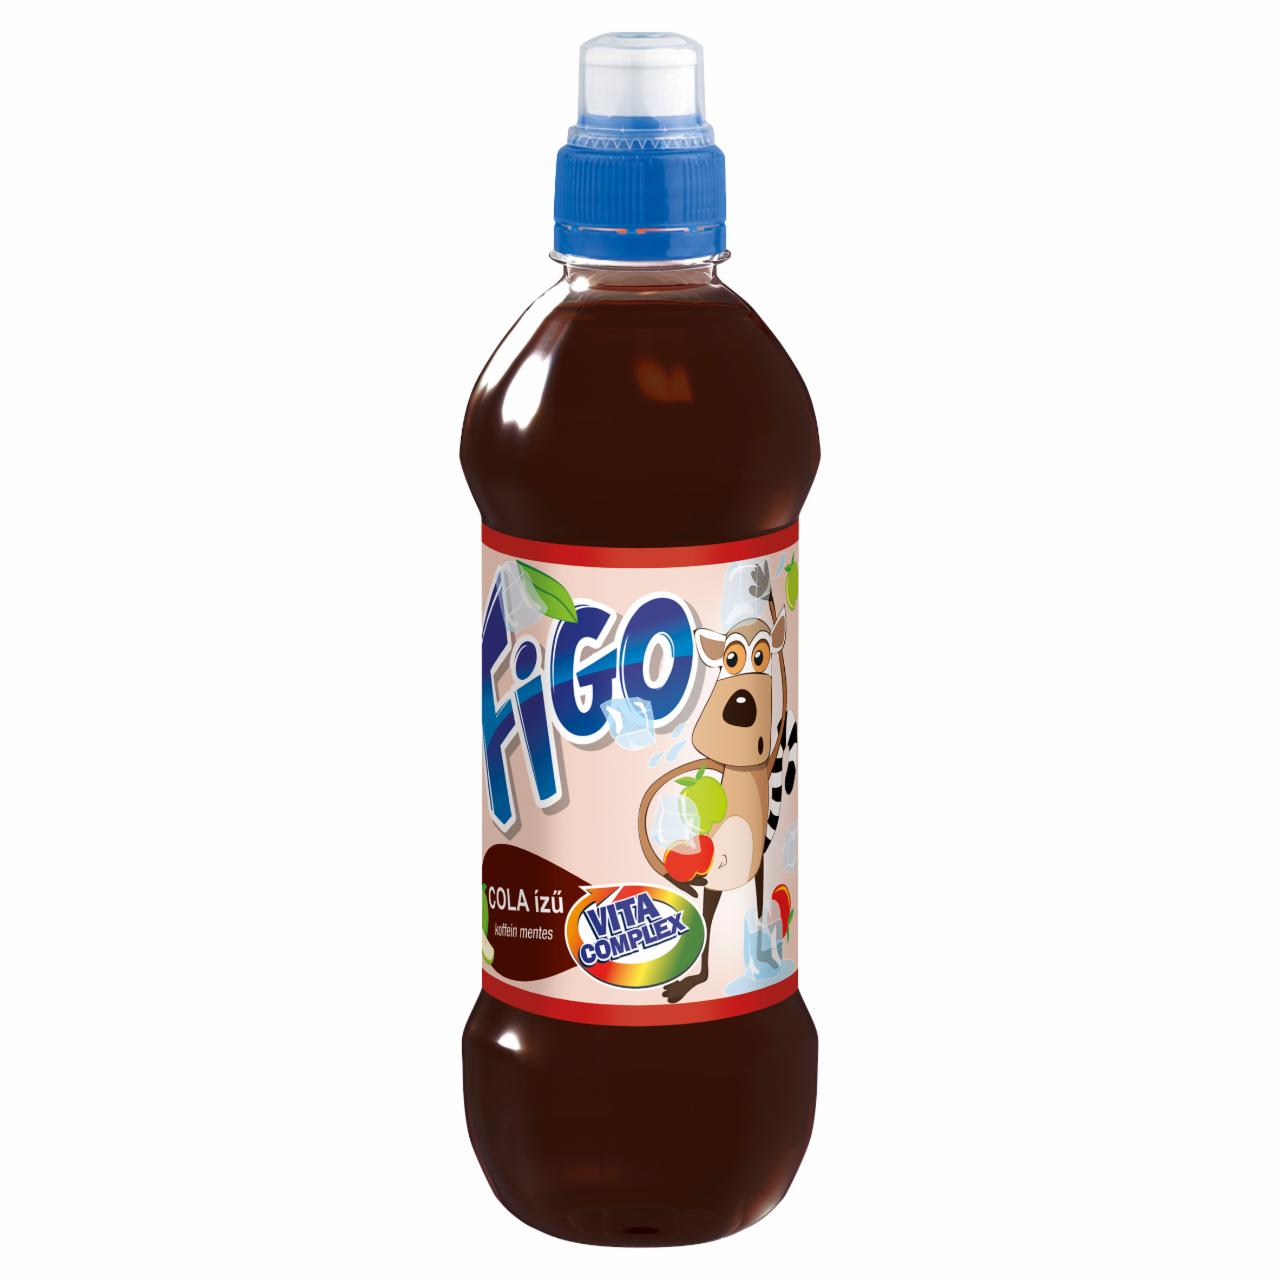 Képek - Figo cola ízű alma ital 300 ml